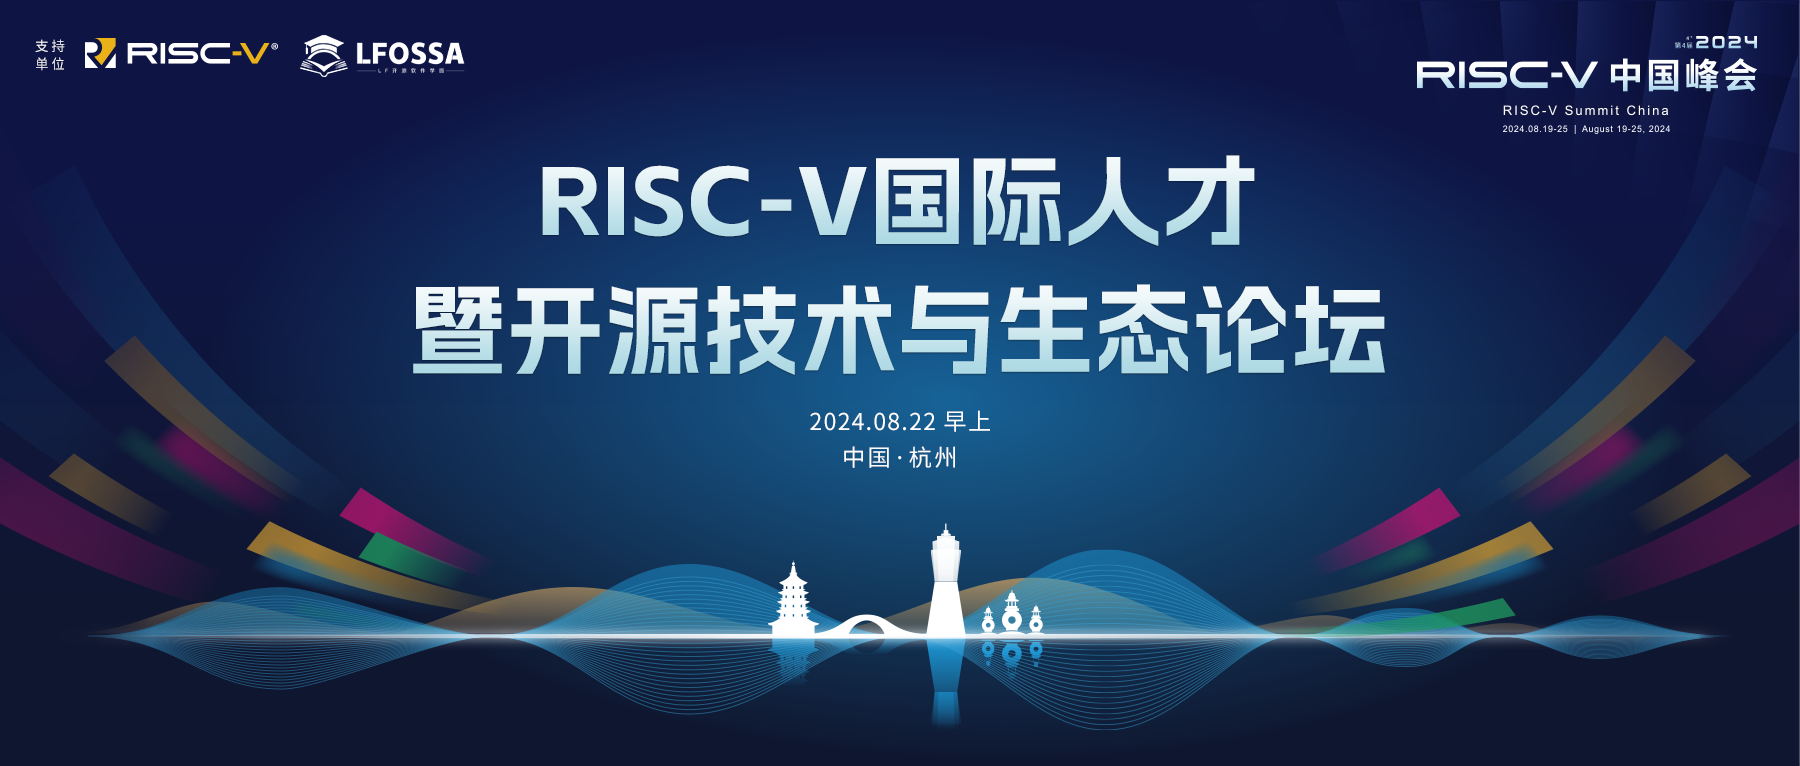 【议题征集截止至7月26日】国际开源及RISC-V人才暨开源技术与生态之旅